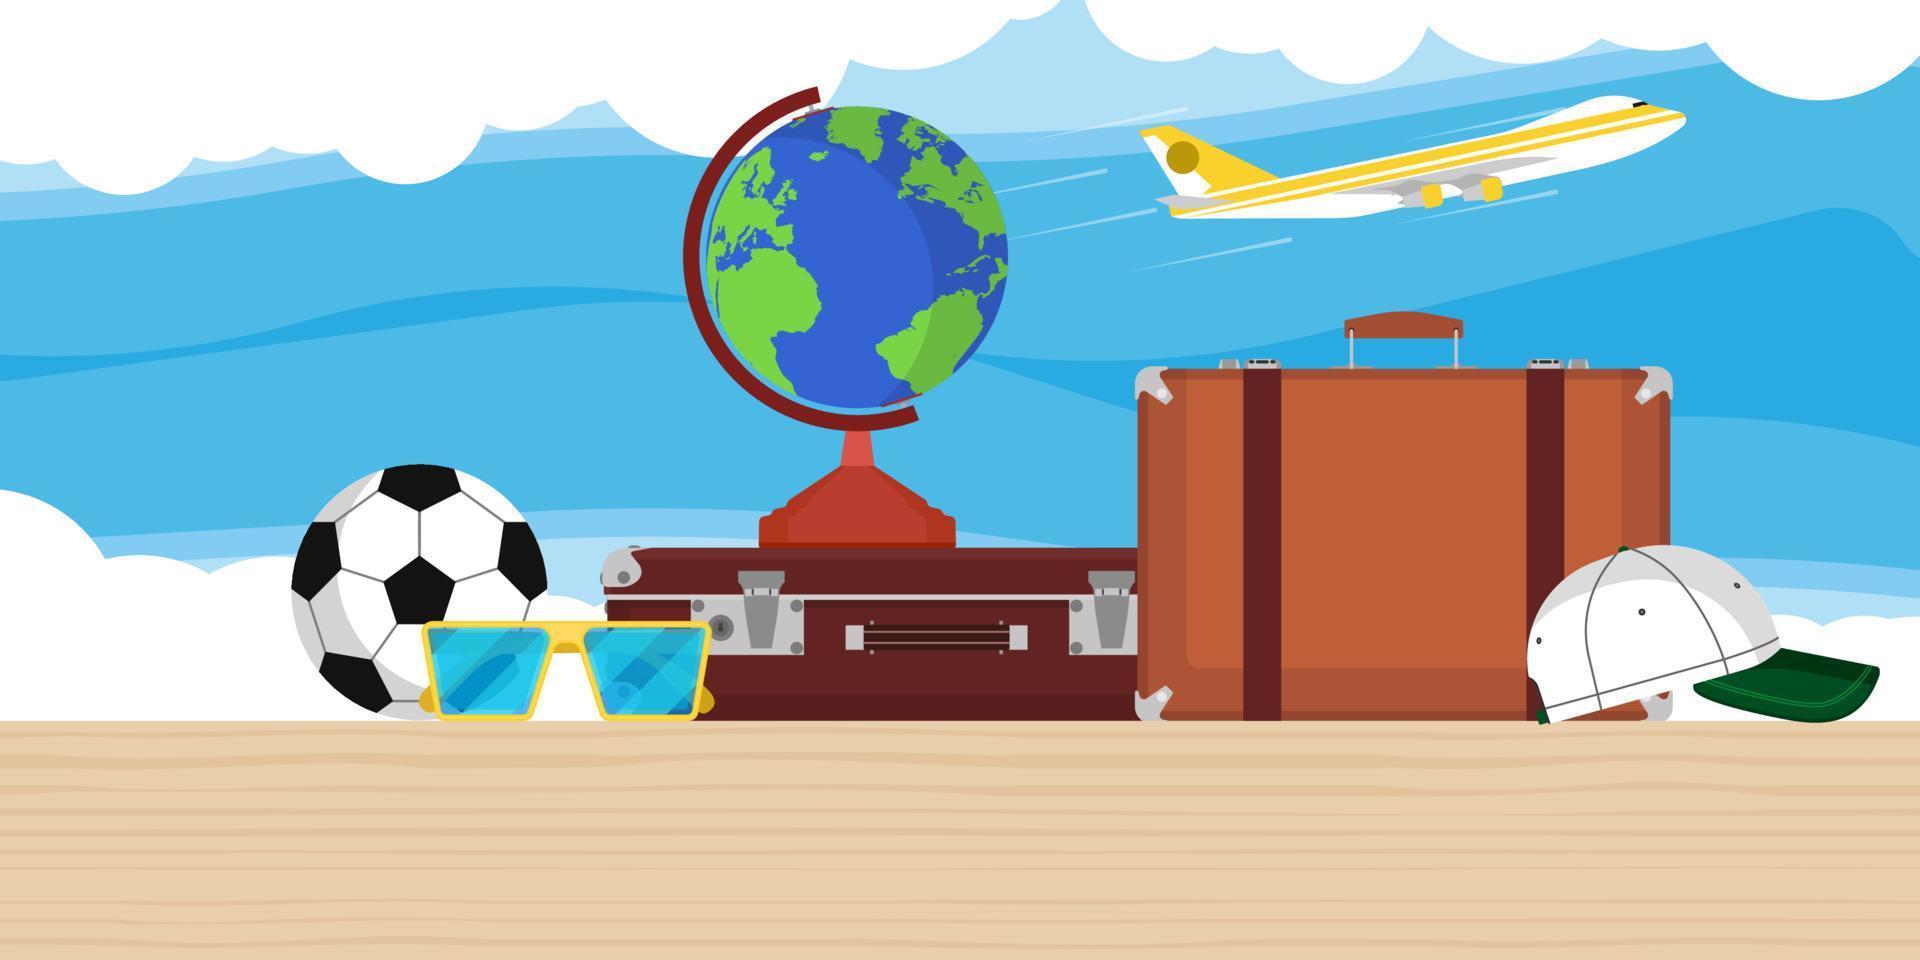 fond de vecteur d'illustration de voyage avec globe, avion, sac et nuages. voyage dans le monde de vacances de tourisme d'avion plat. carte de croisière de bannière d'aventure de concept de tour d'été